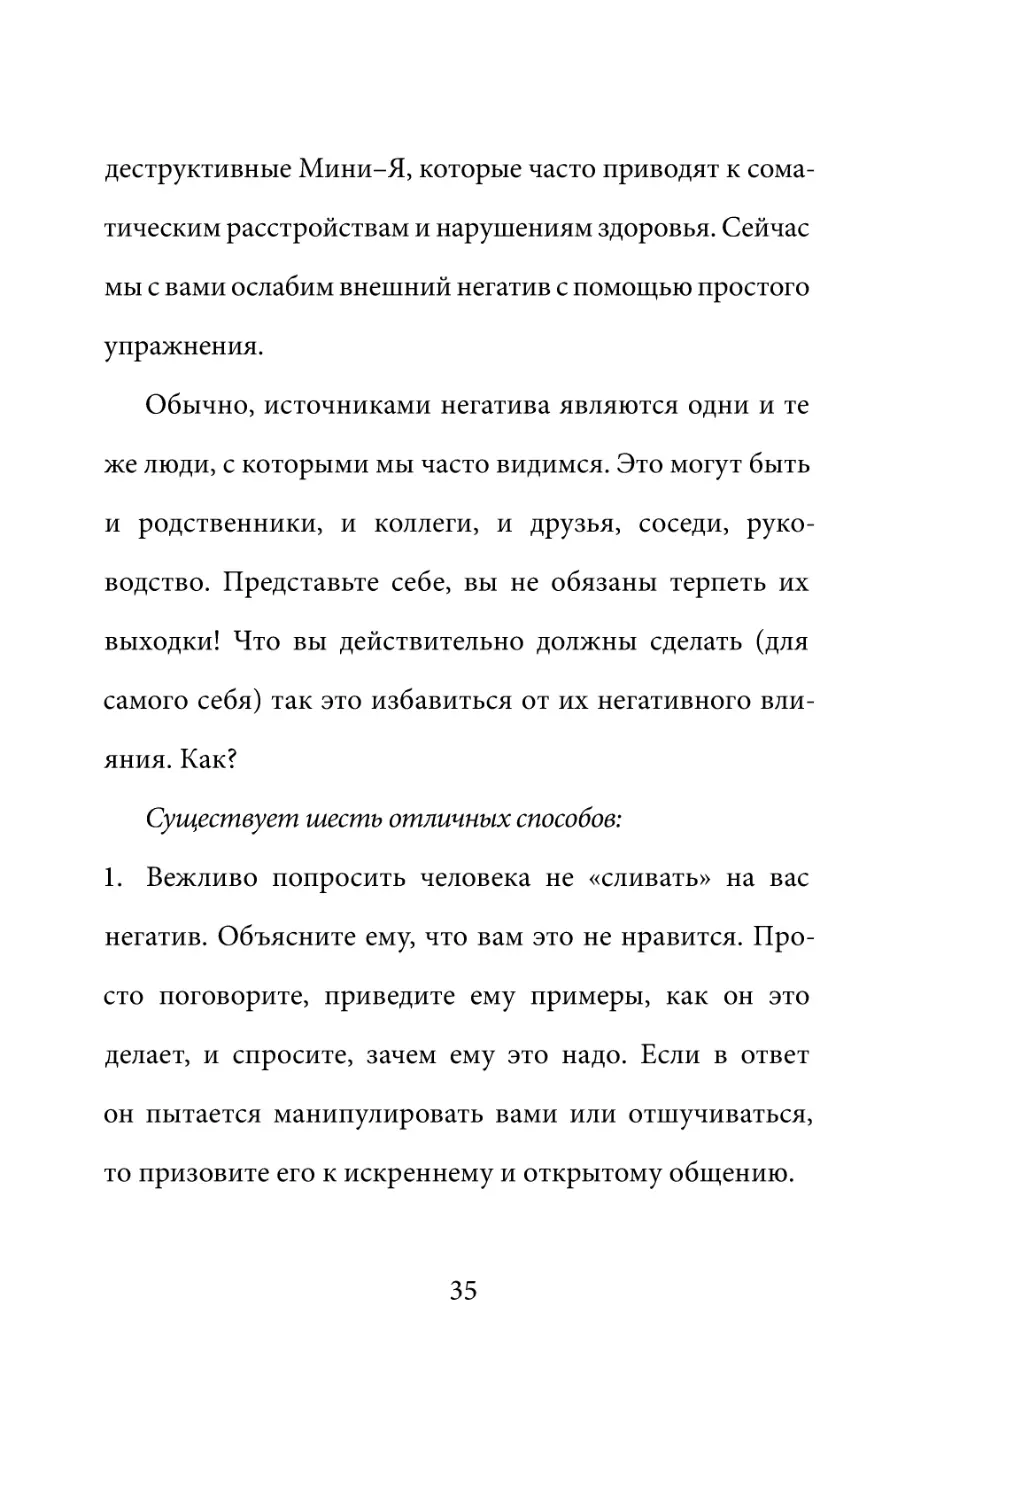 Sergey_Filippov_Dnevnik_samorazvitia_Evolyutsia_Vnutrennego_Sostoyania_35.pdf (p.35)